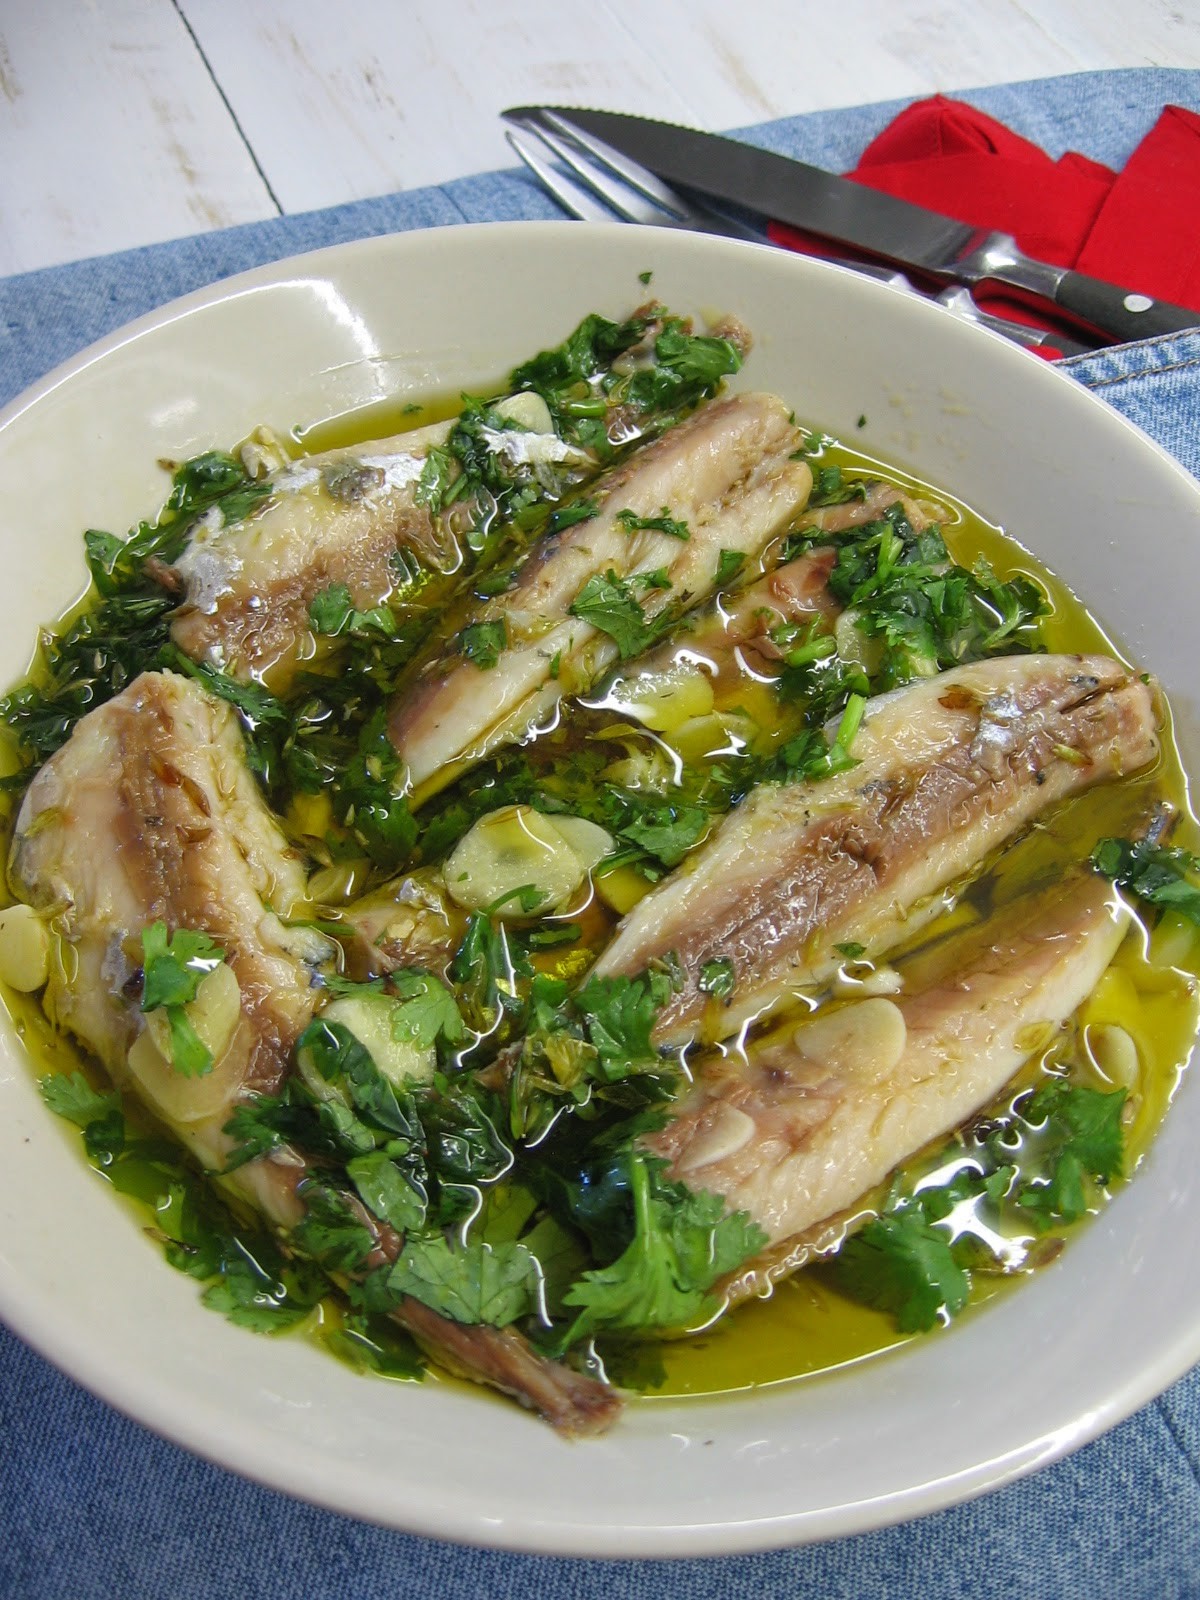 Carapaus Alimados. Um prato típico da culinária portuguesa!